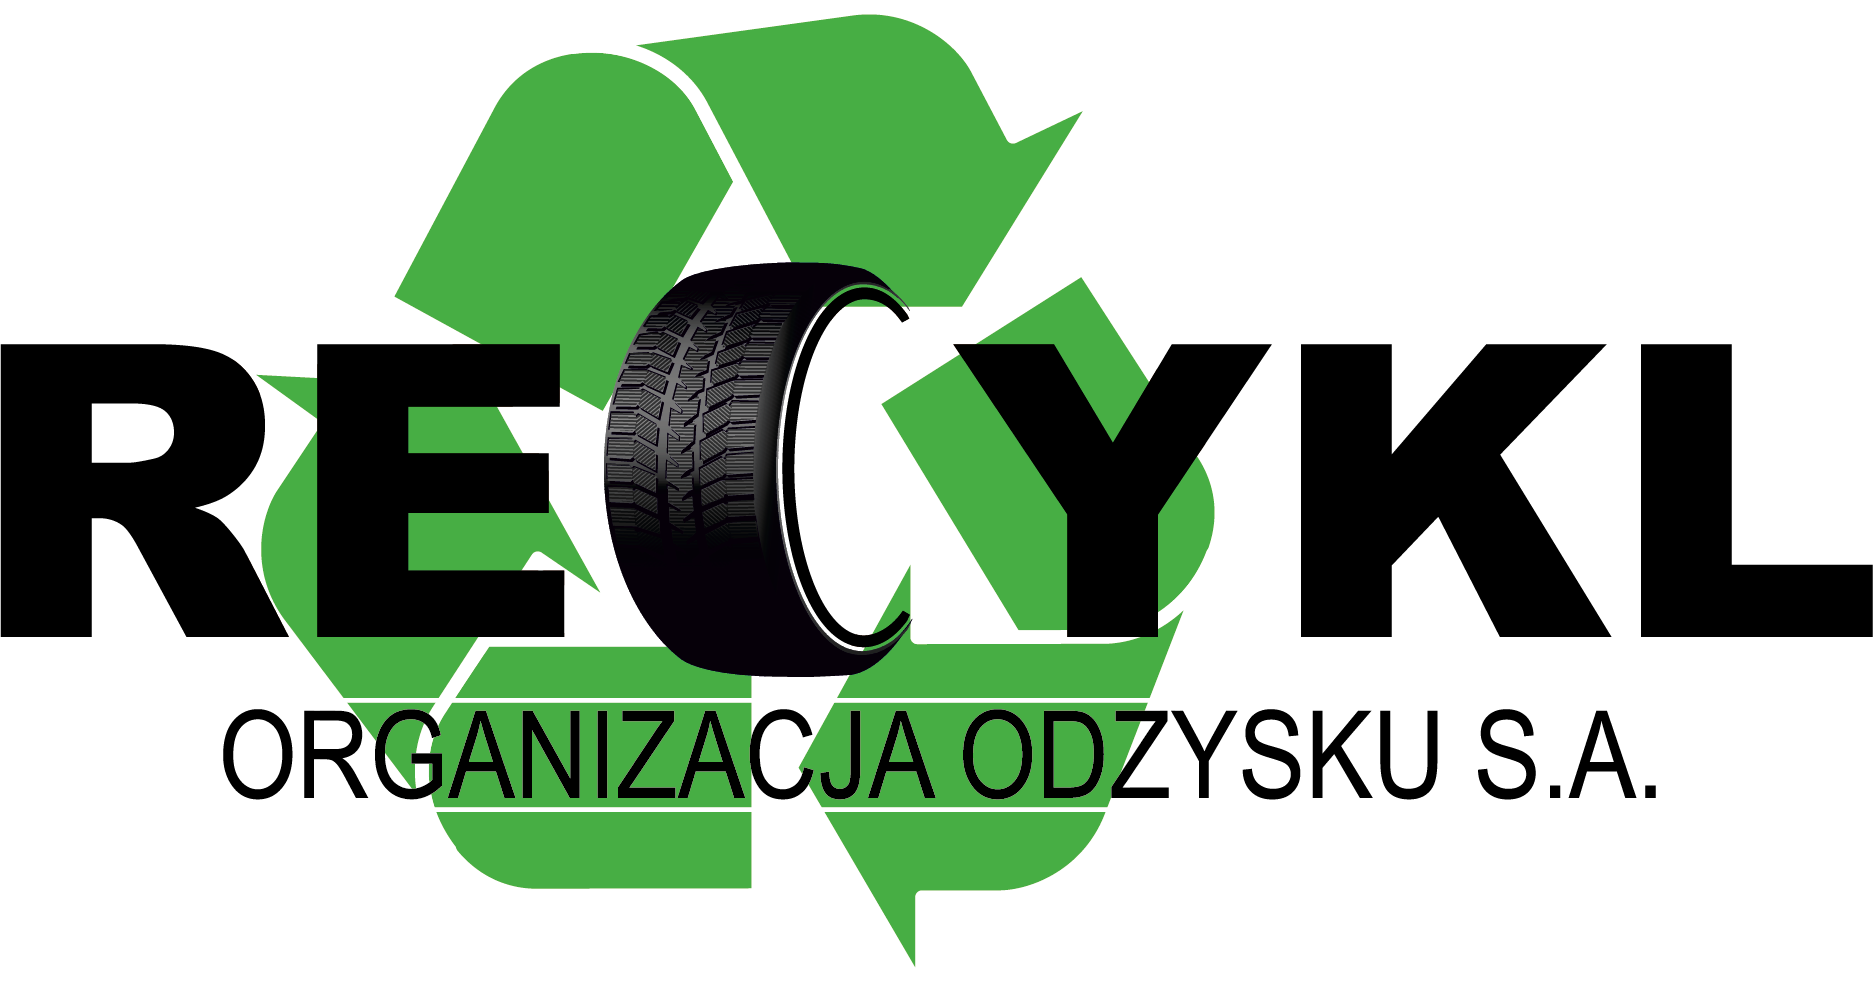 logo-RECYKL_Organizacja-poprawiony-plik.png